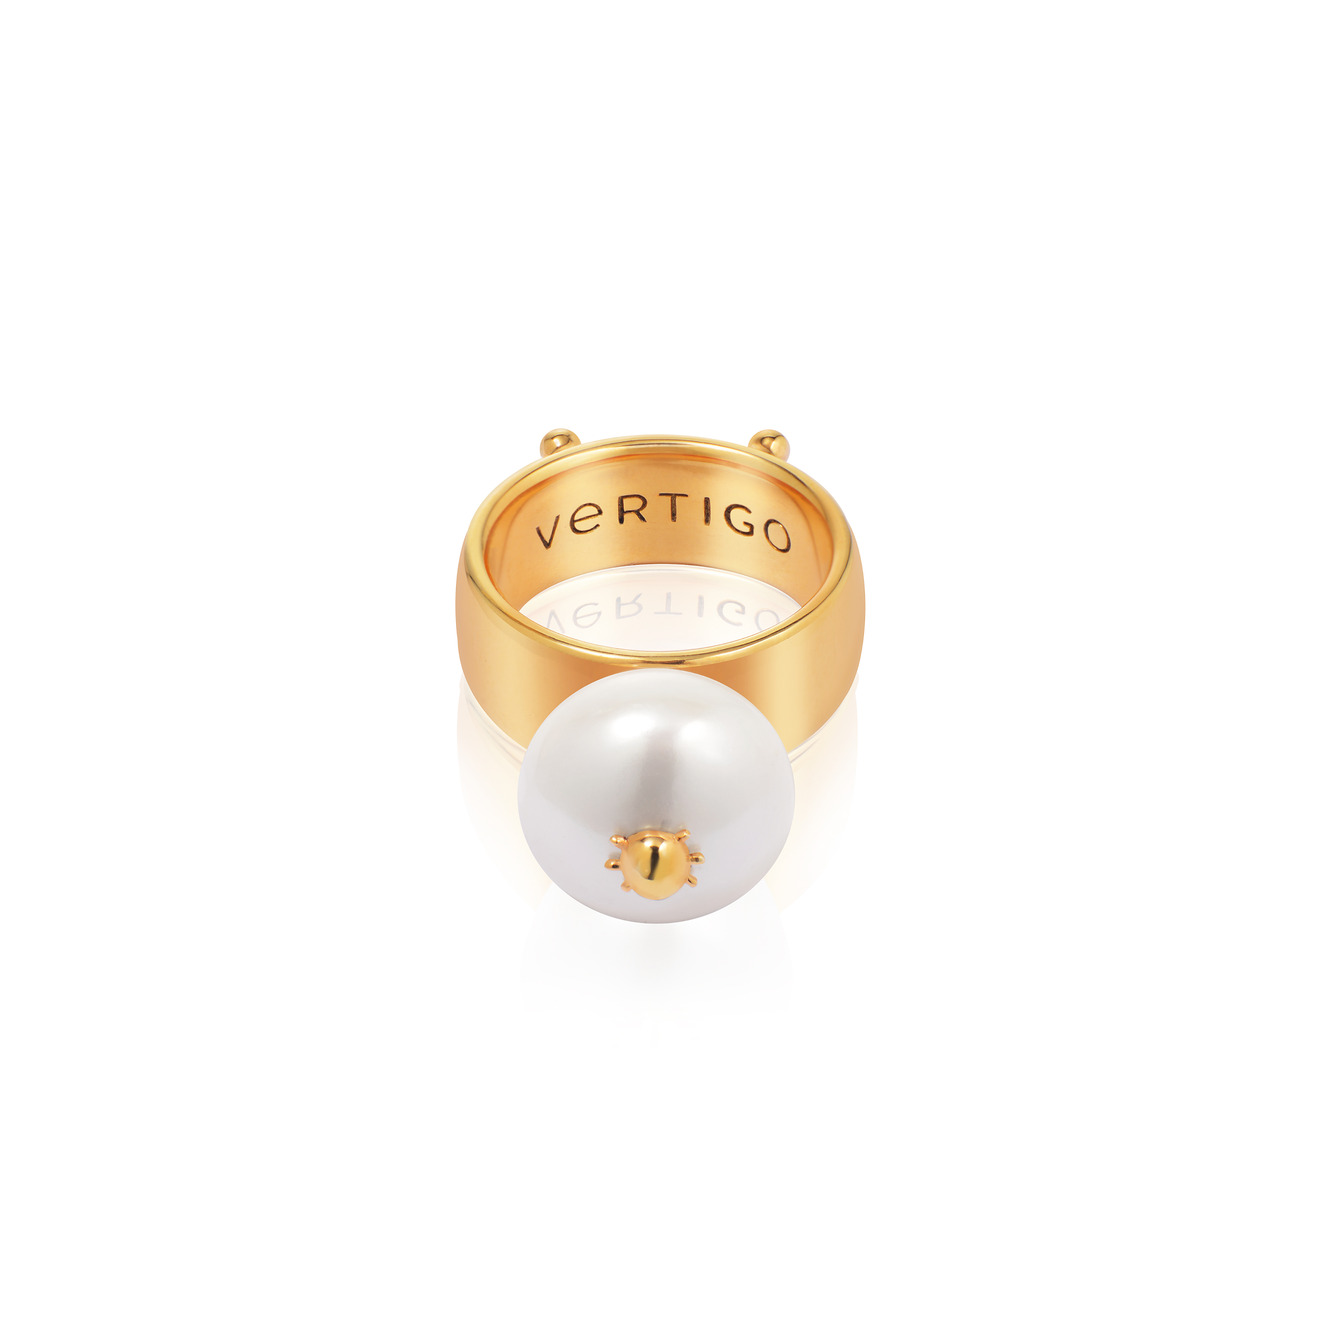 Vertigo Jewellery Lab Позолоченное кольцо СLEOPTR LADYBUG RING из серебра с речным жемчугом vertigo jewellery lab фаланговое кольцо из серебра essentials покрытое розовым золотом